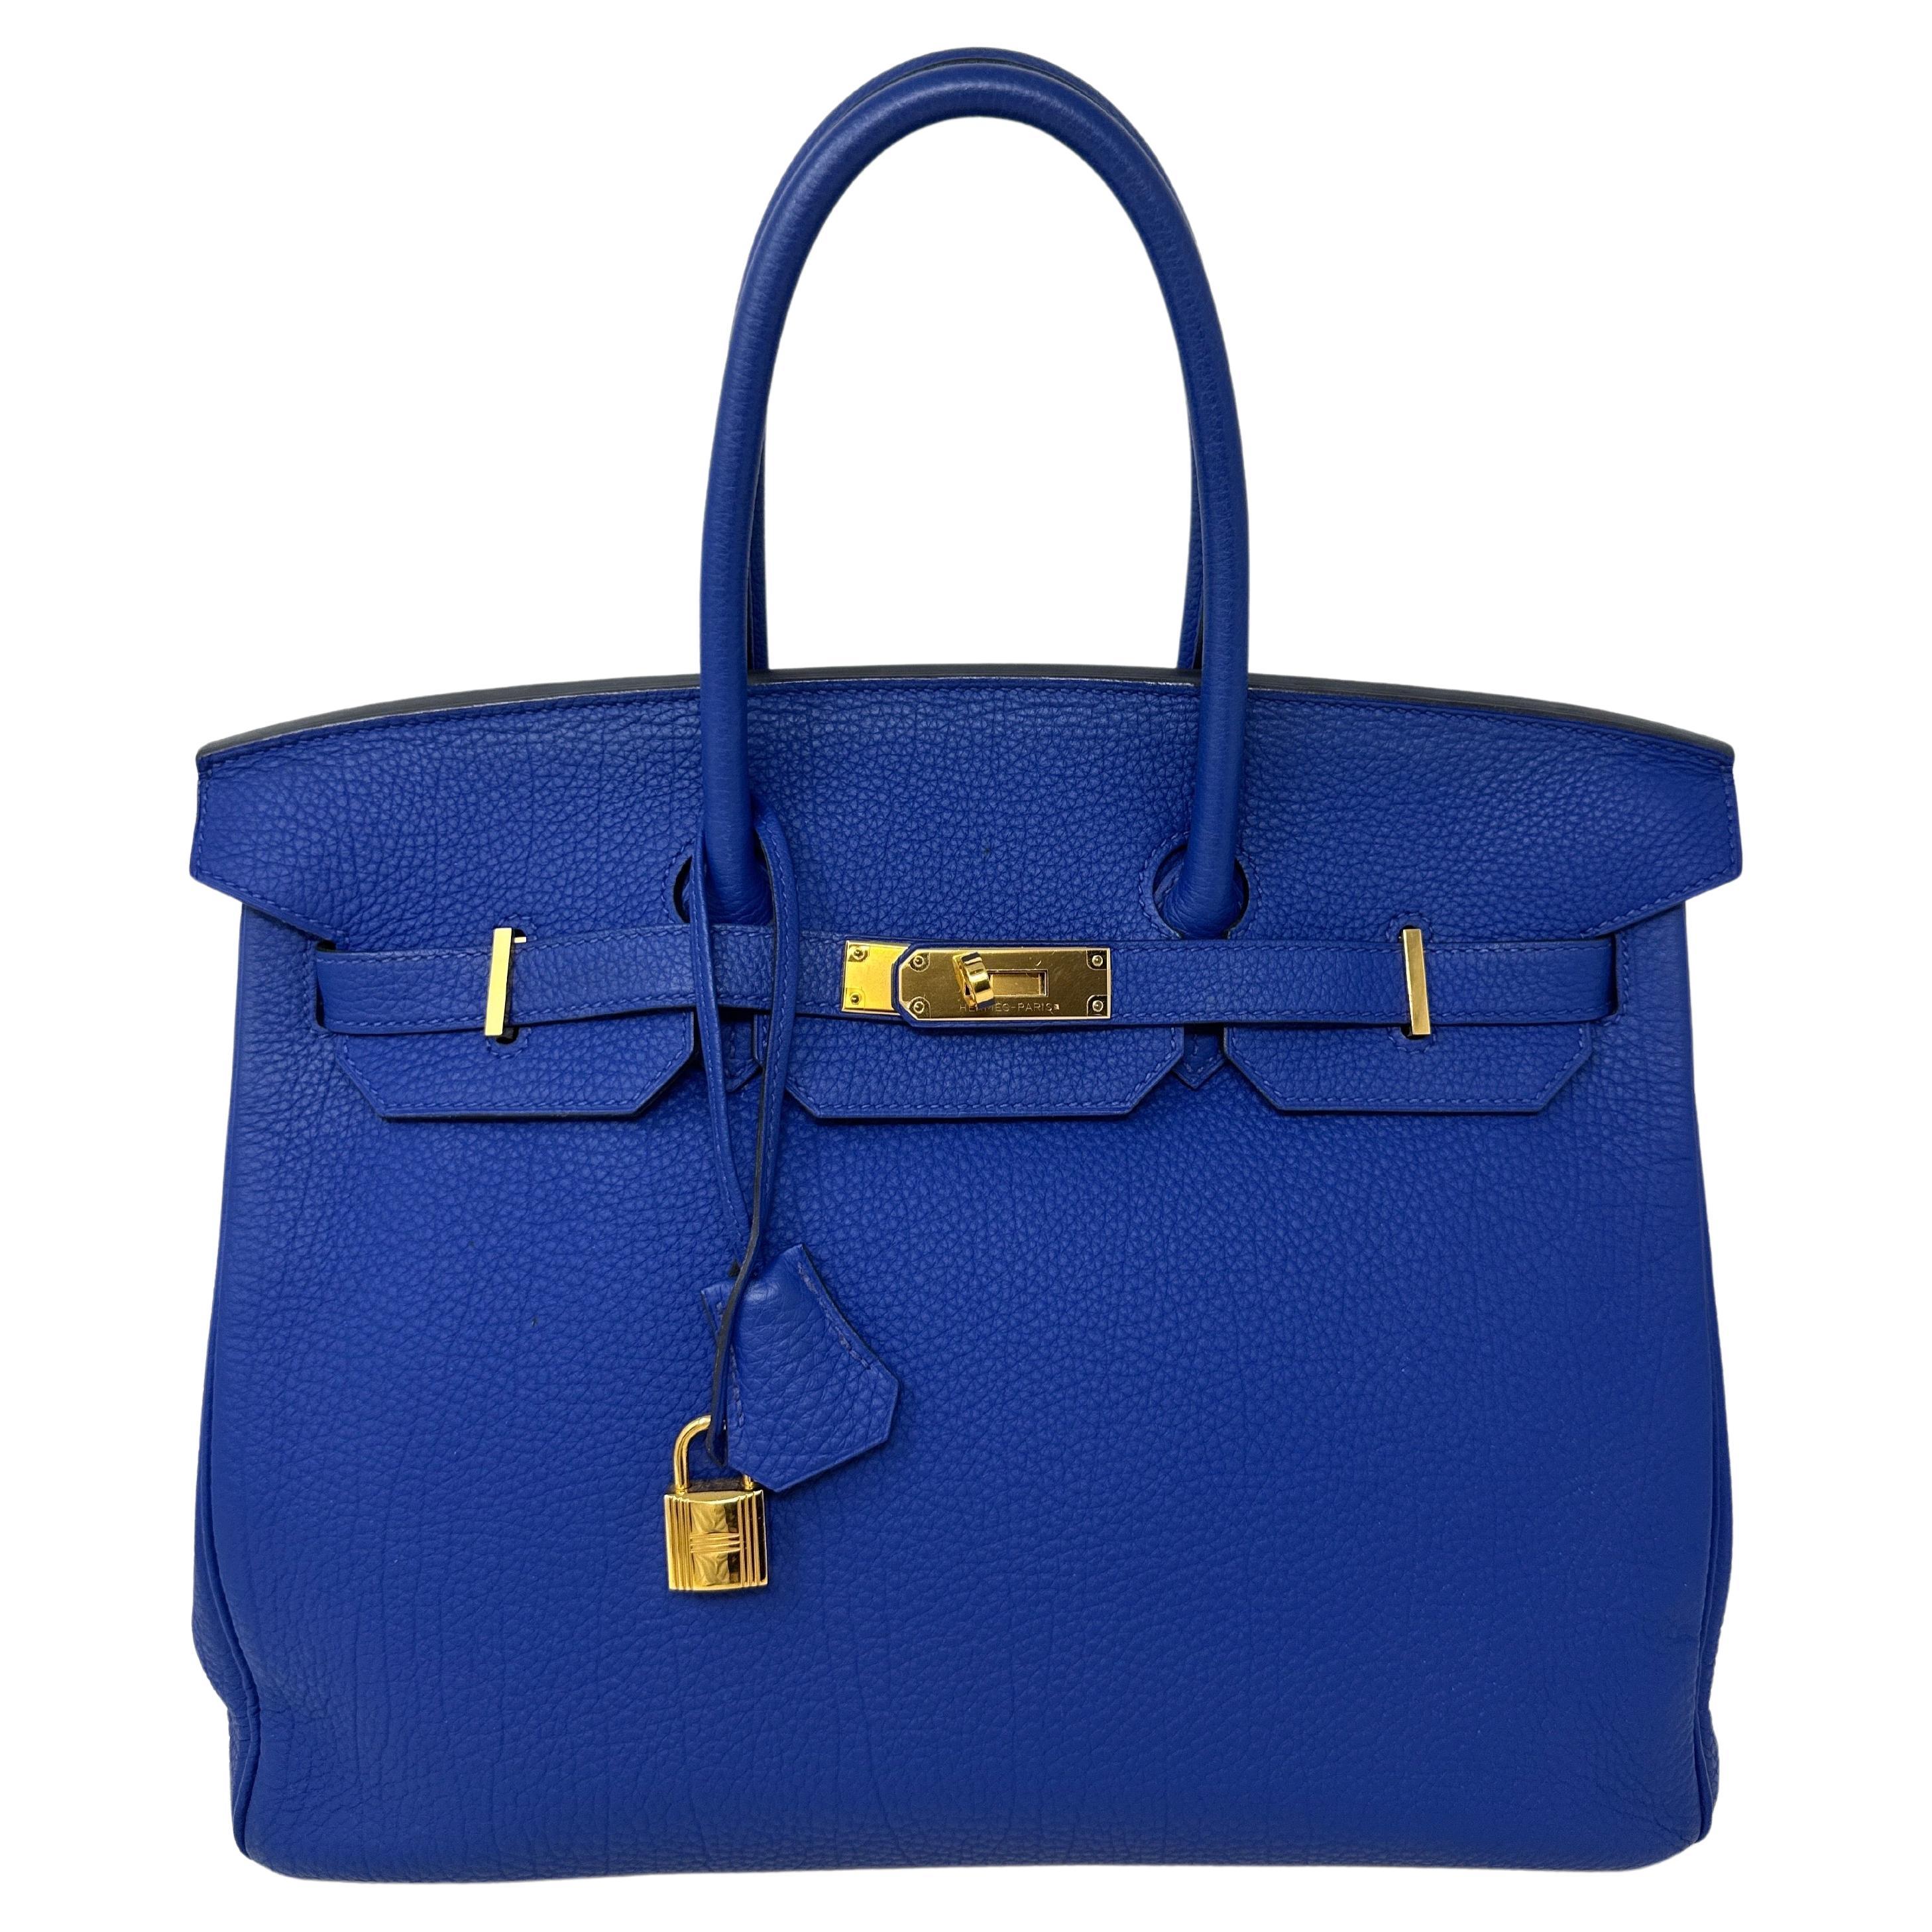 Hermes Blue Electrique Birkin 30 Bag 